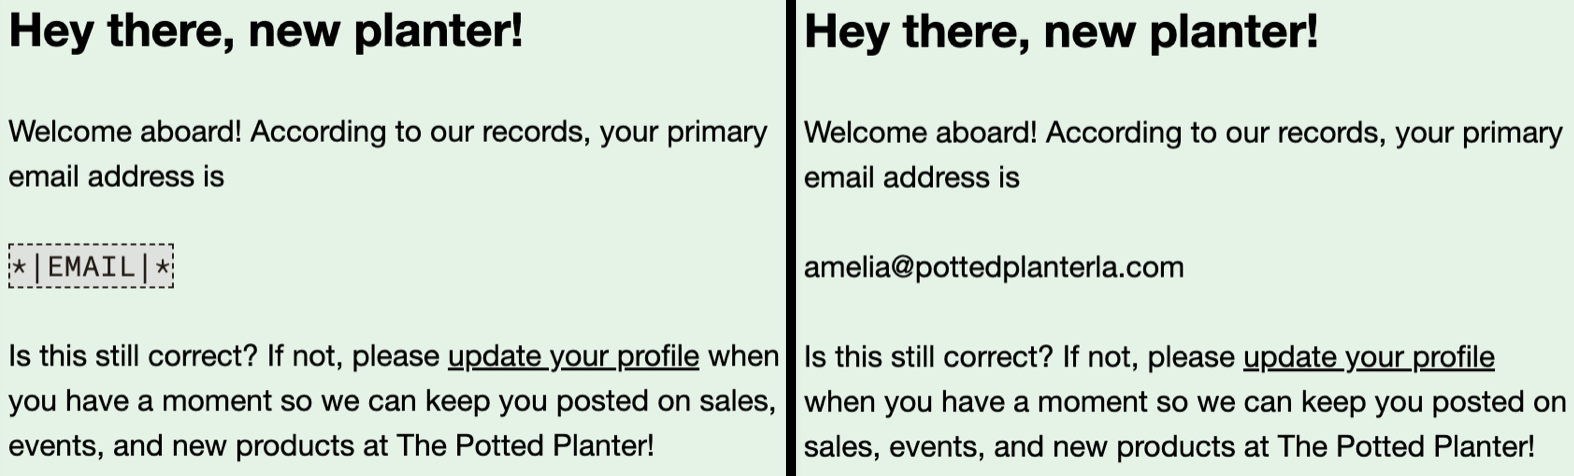 imagen de comparación de una etiqueta merge en un borrador de correo electrónico y una etiqueta merge en una vista previa en directo